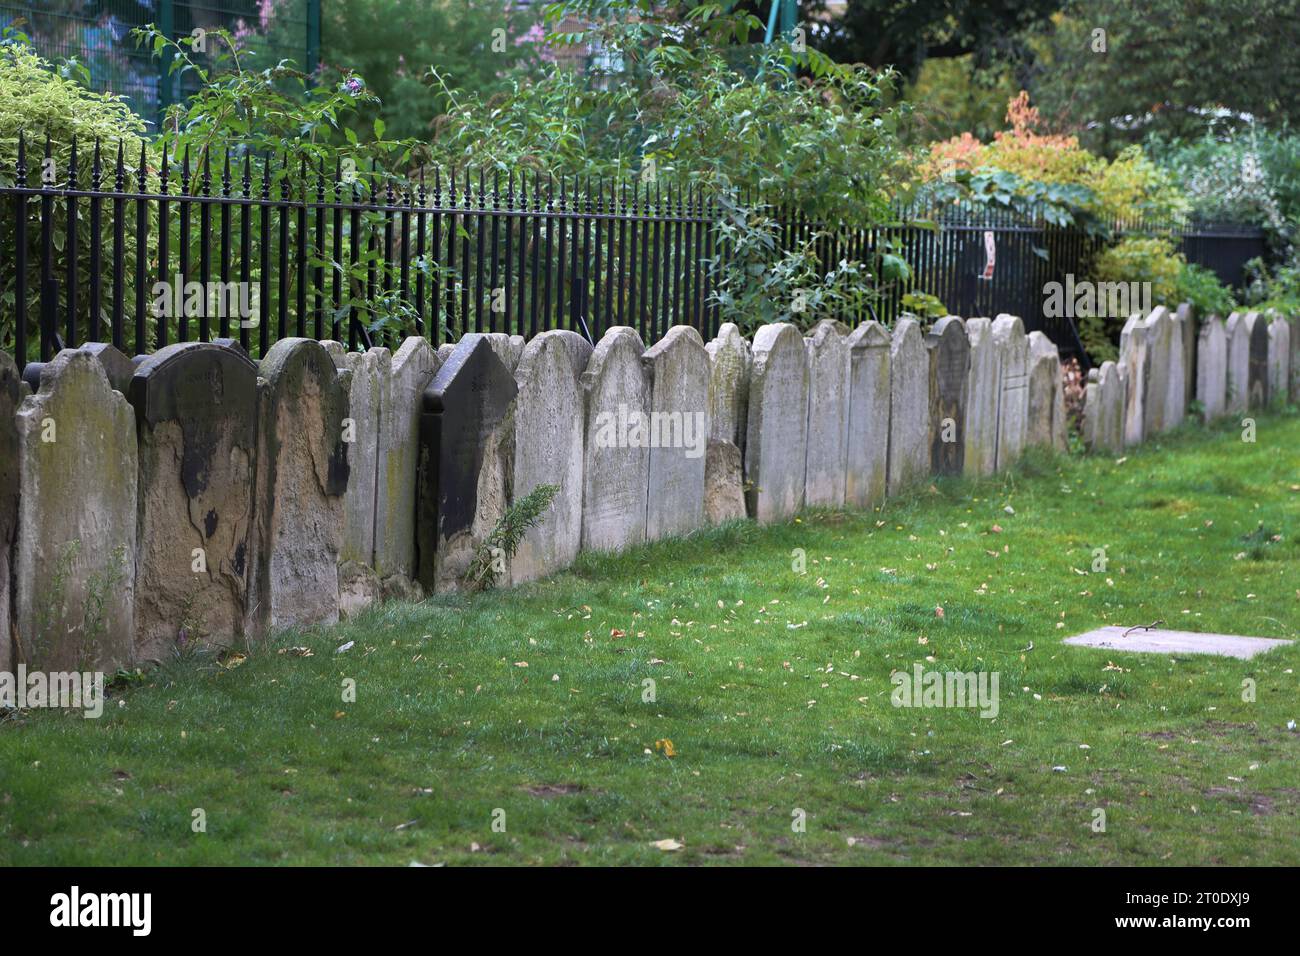 St Luke's Church Burial Ground a été converti en jardin public en 1881, les pierres tombales ont été placées pour former un mur limite Sydney Street Chelsea Lo Banque D'Images